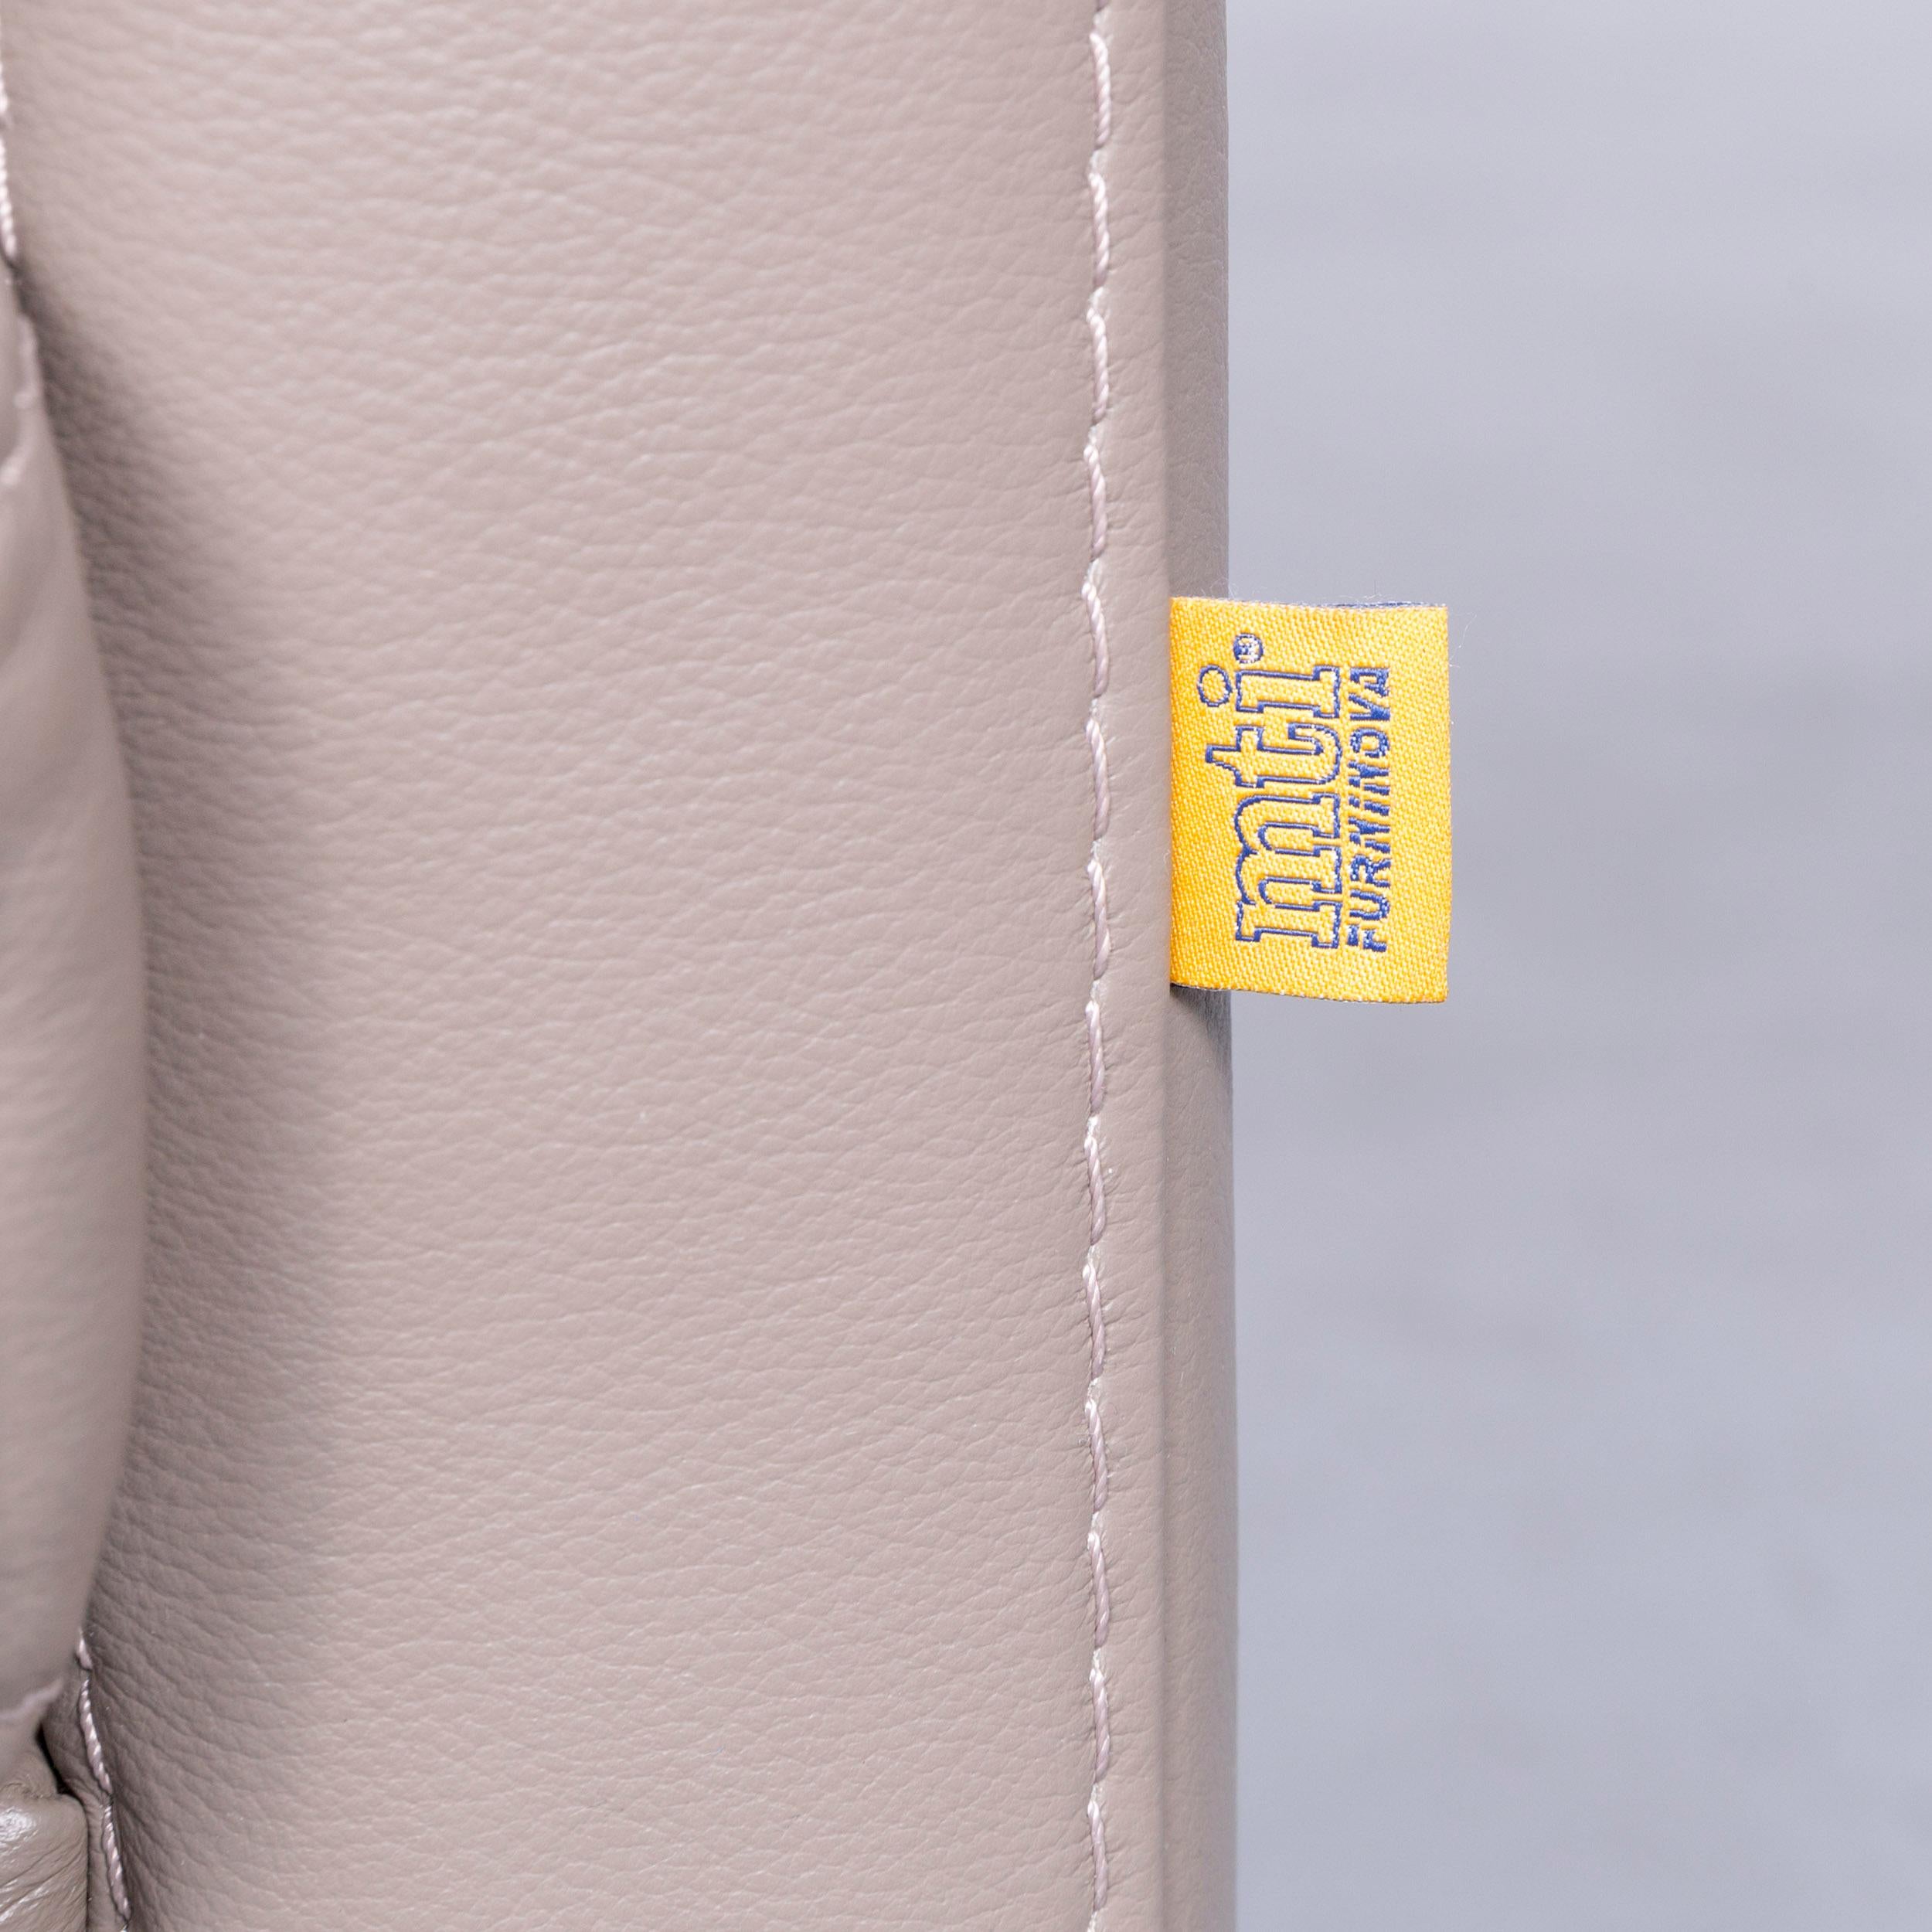 Furninova Designer Leather Armchair in Grey 1